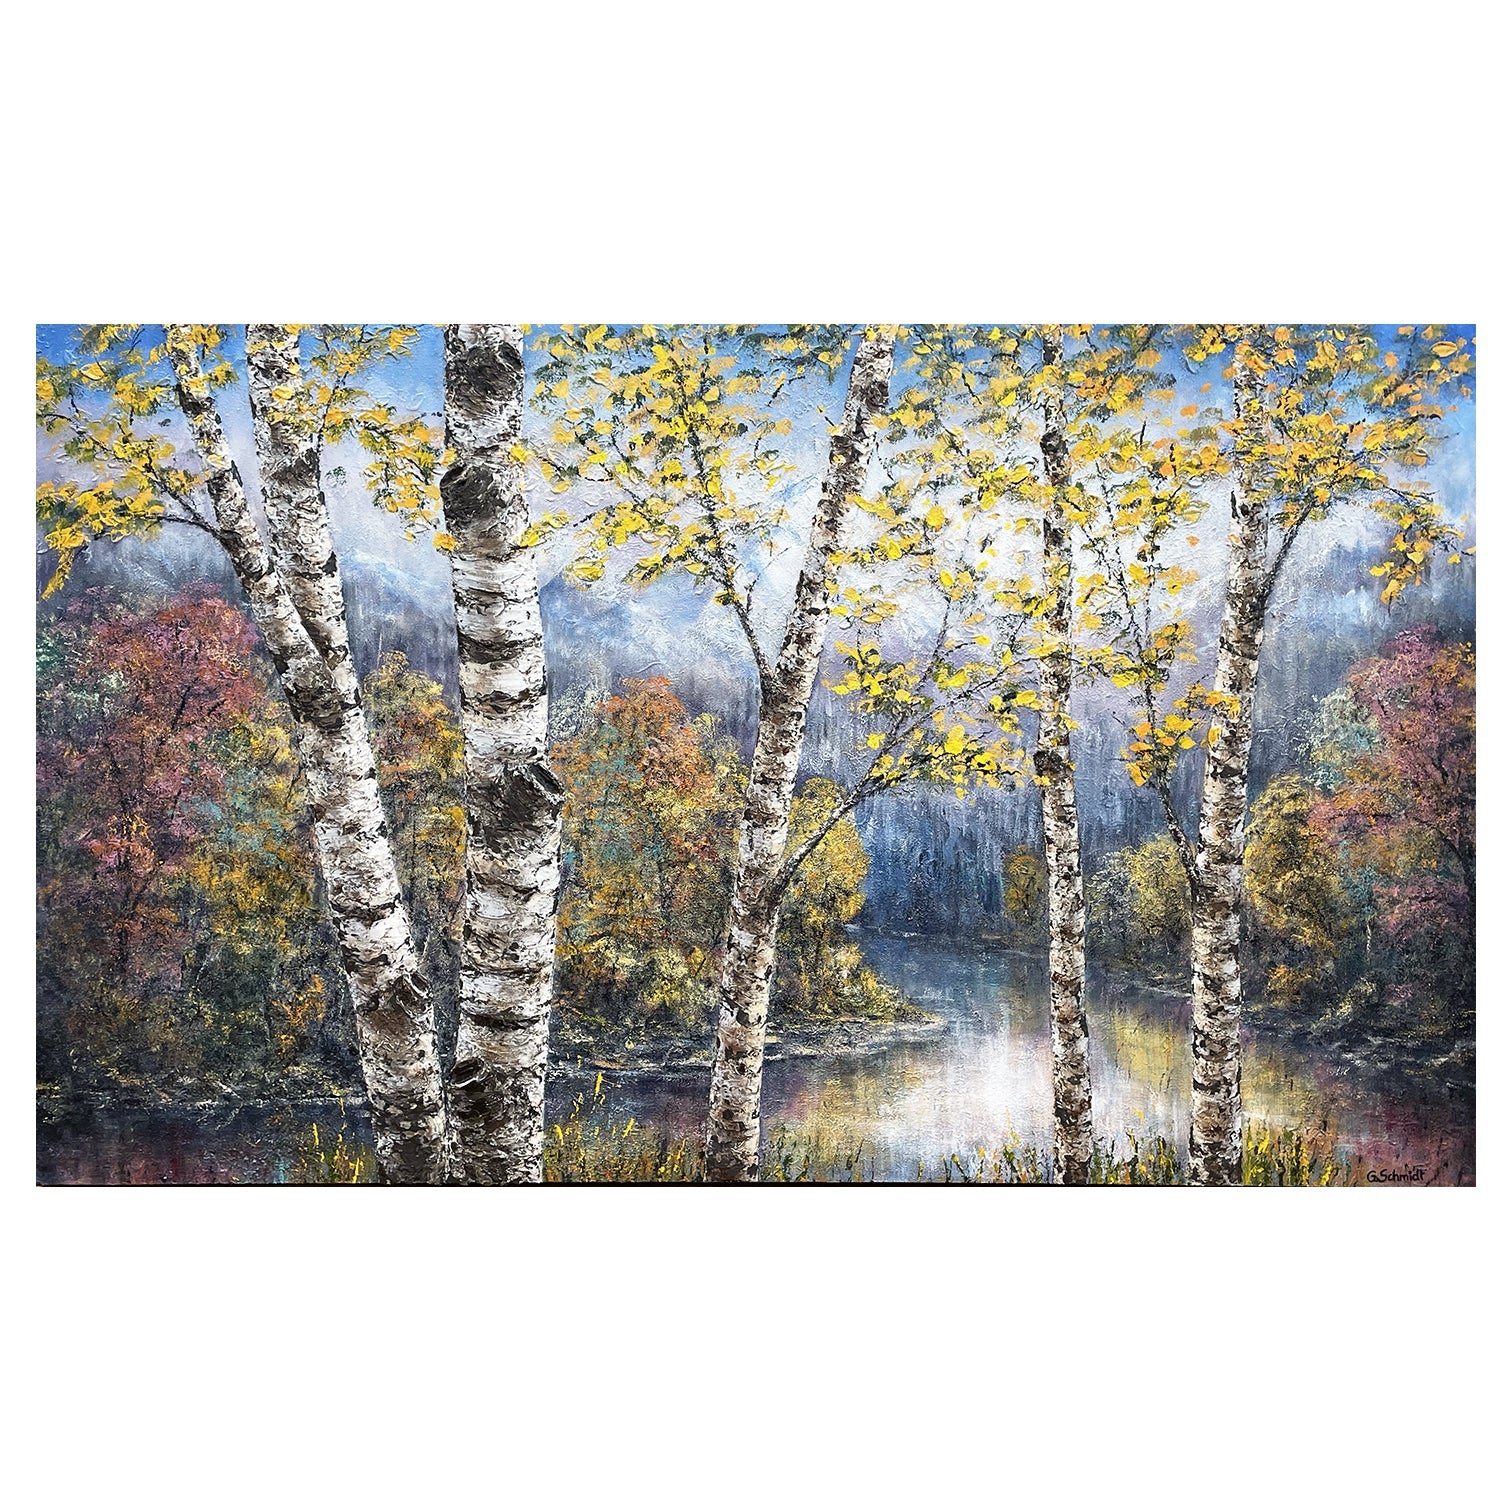 Birch Woodland River - an original acrylic of birch trees by Michigan artist Gerd Schmidt.